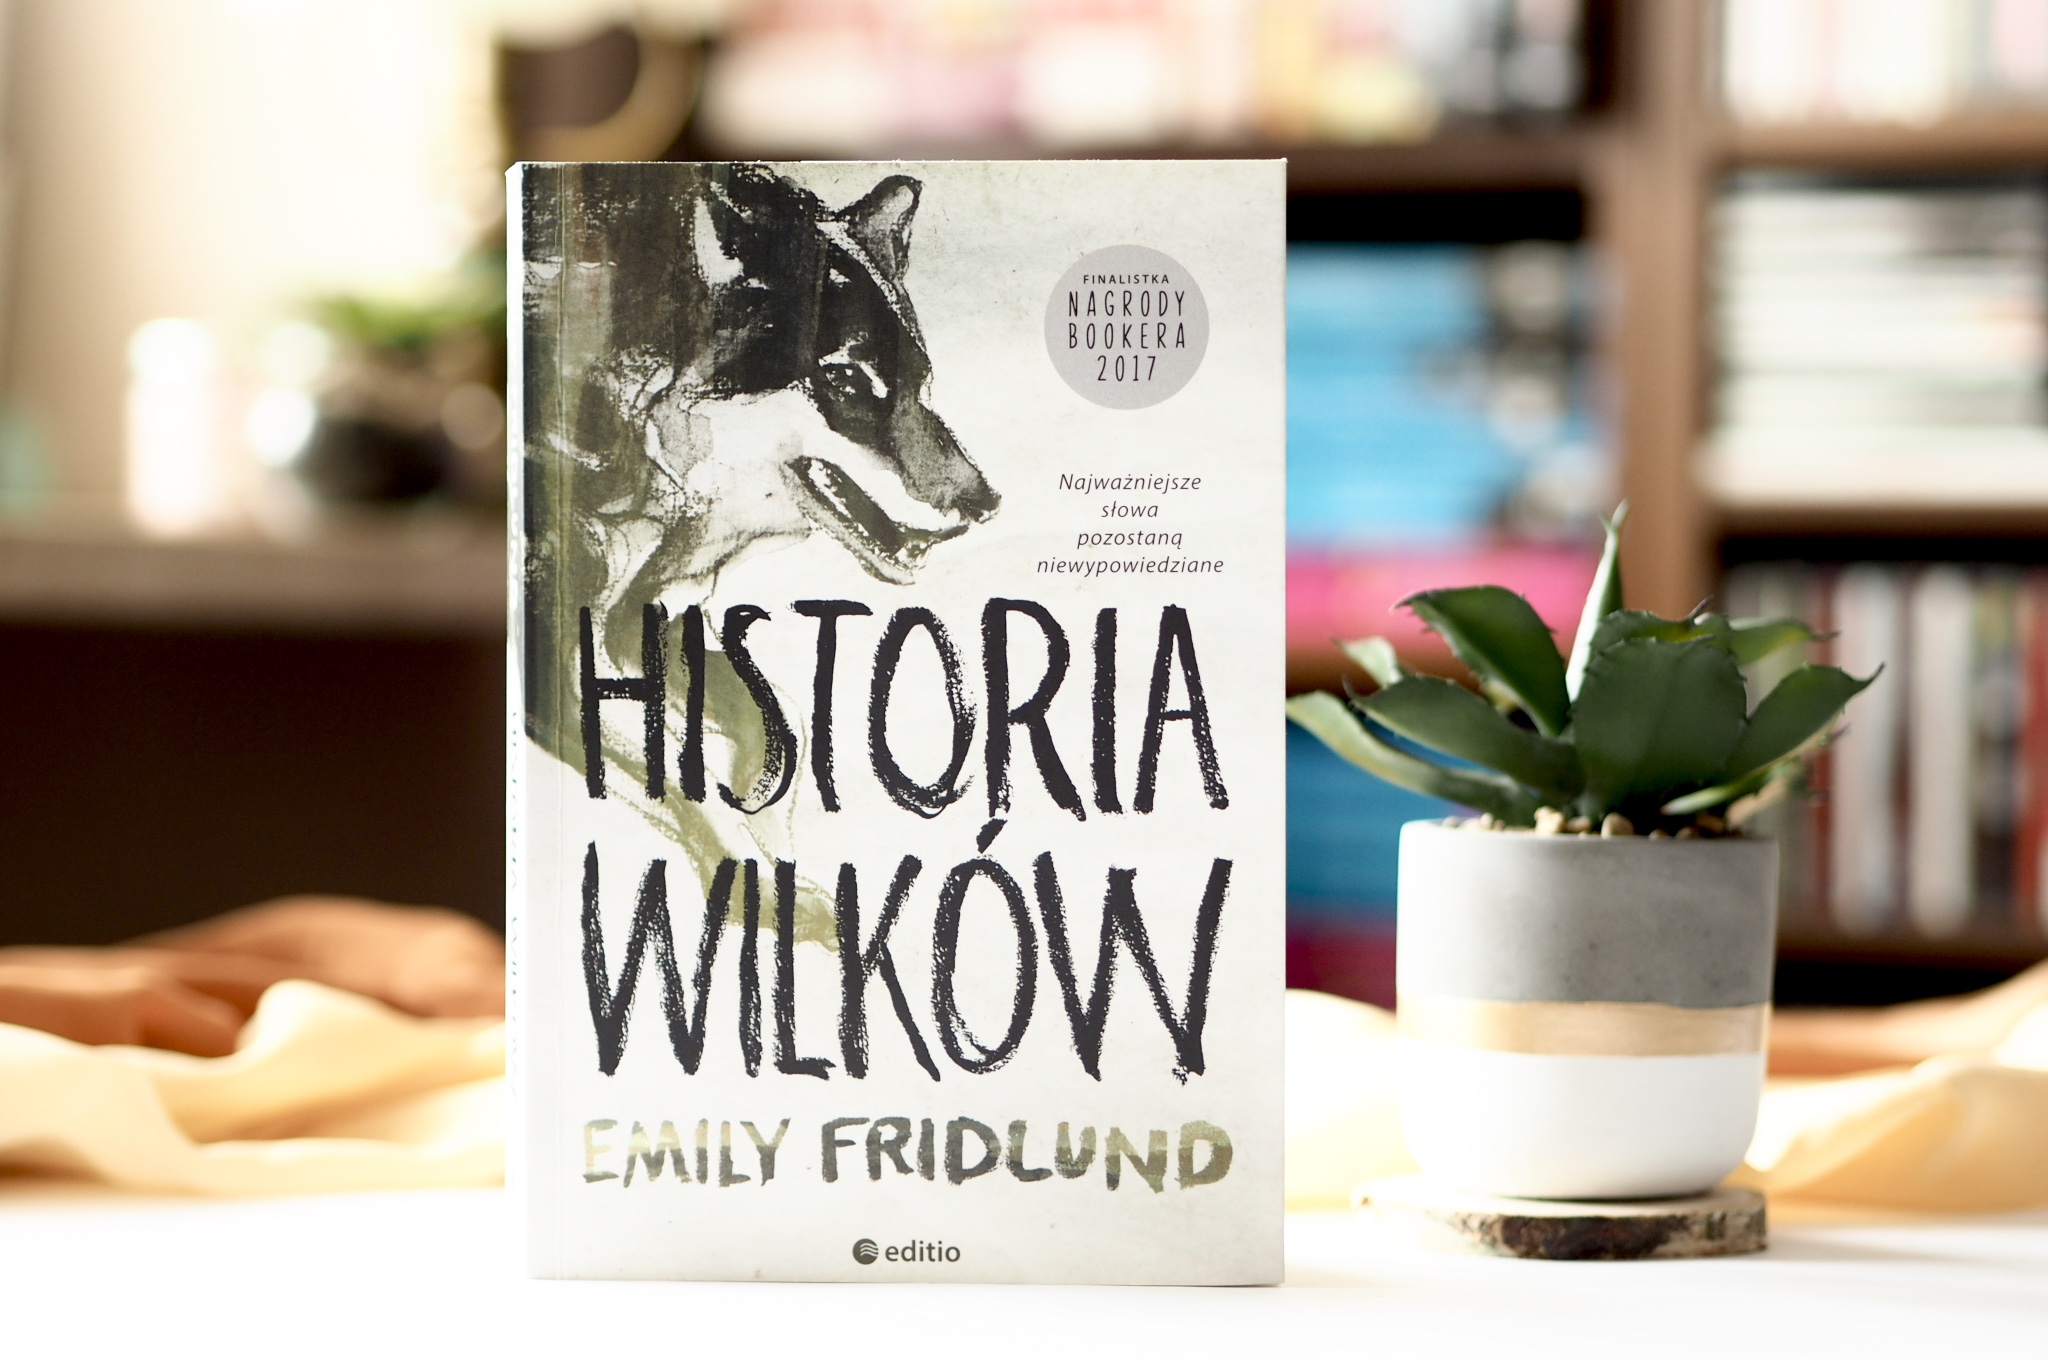 EMILY FRIDLUND "HISTORIA WILKÓW"